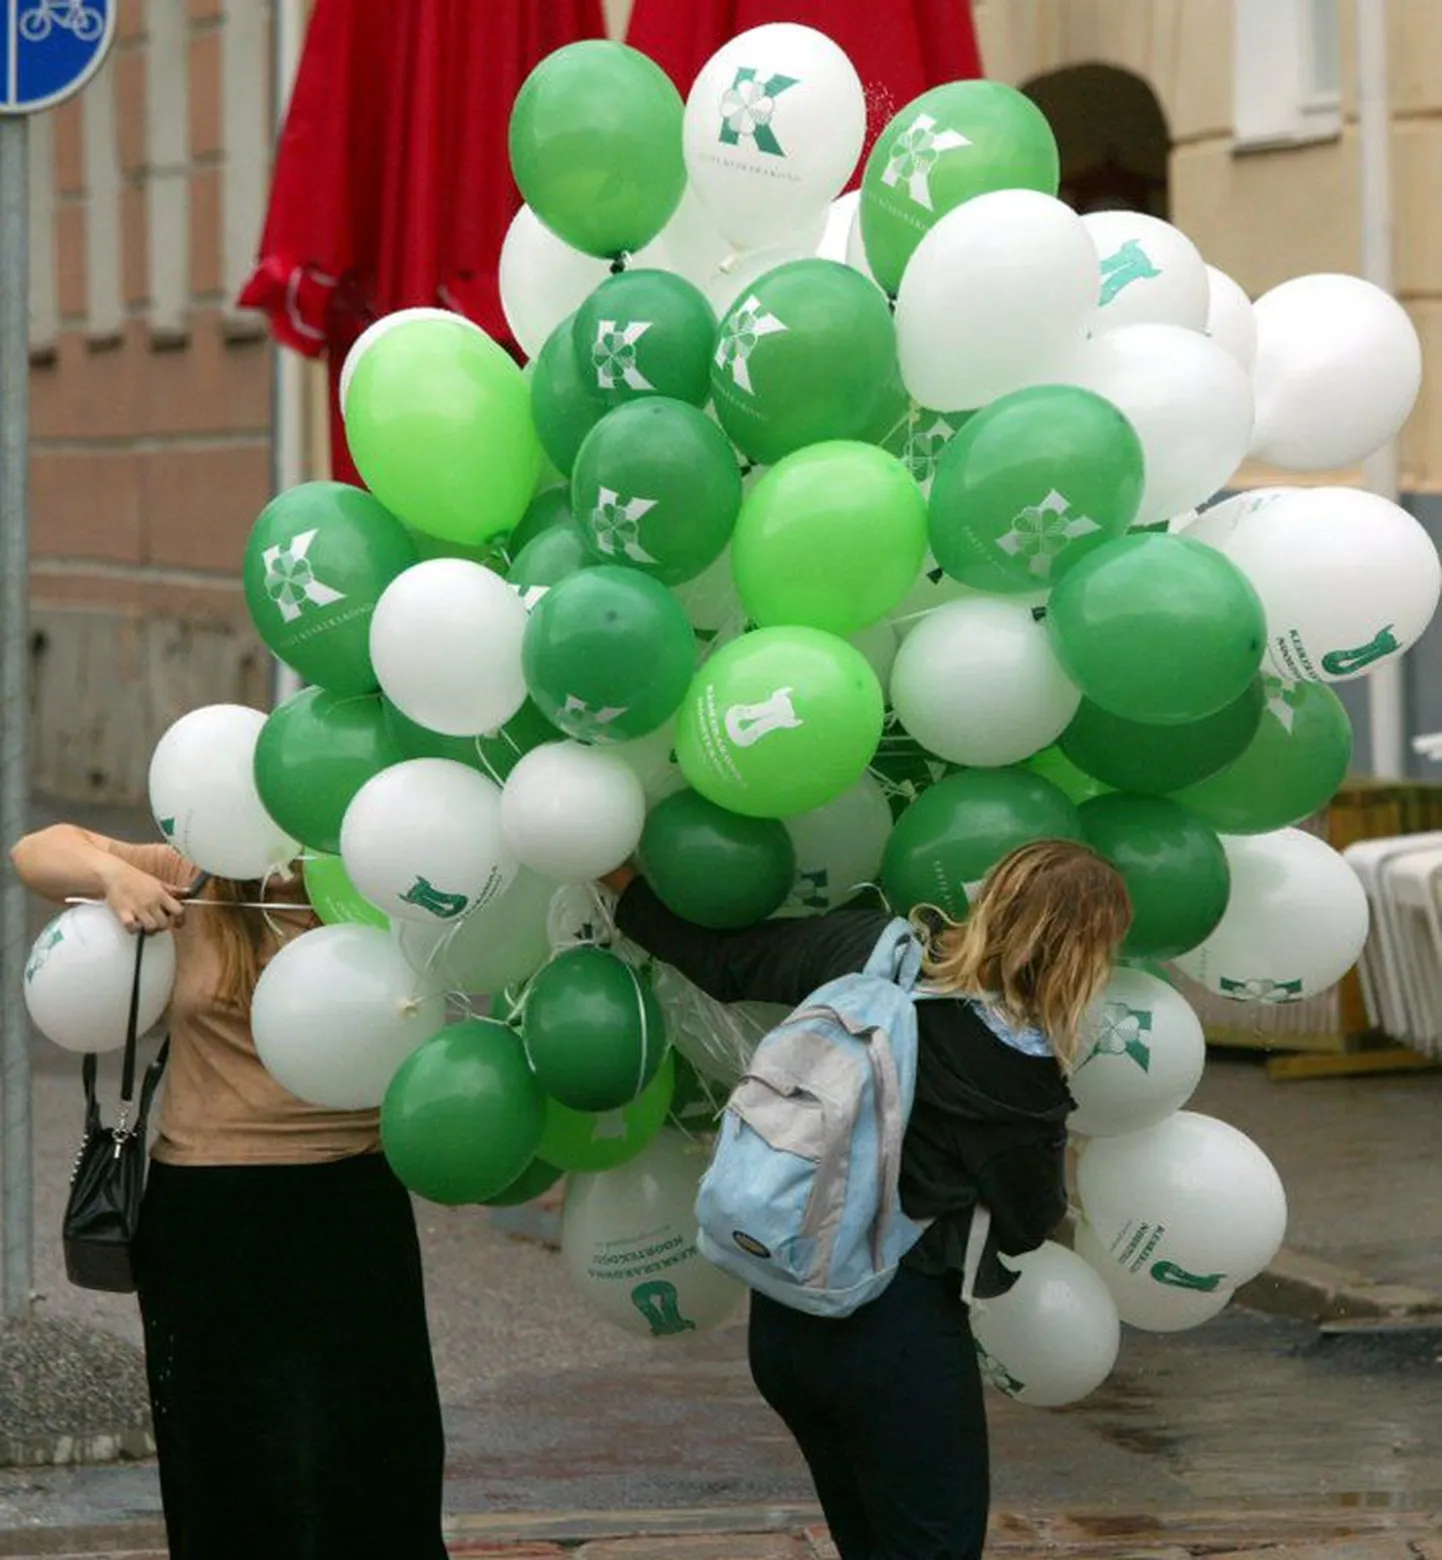 Рекламные воздушные шары Центристской партии.